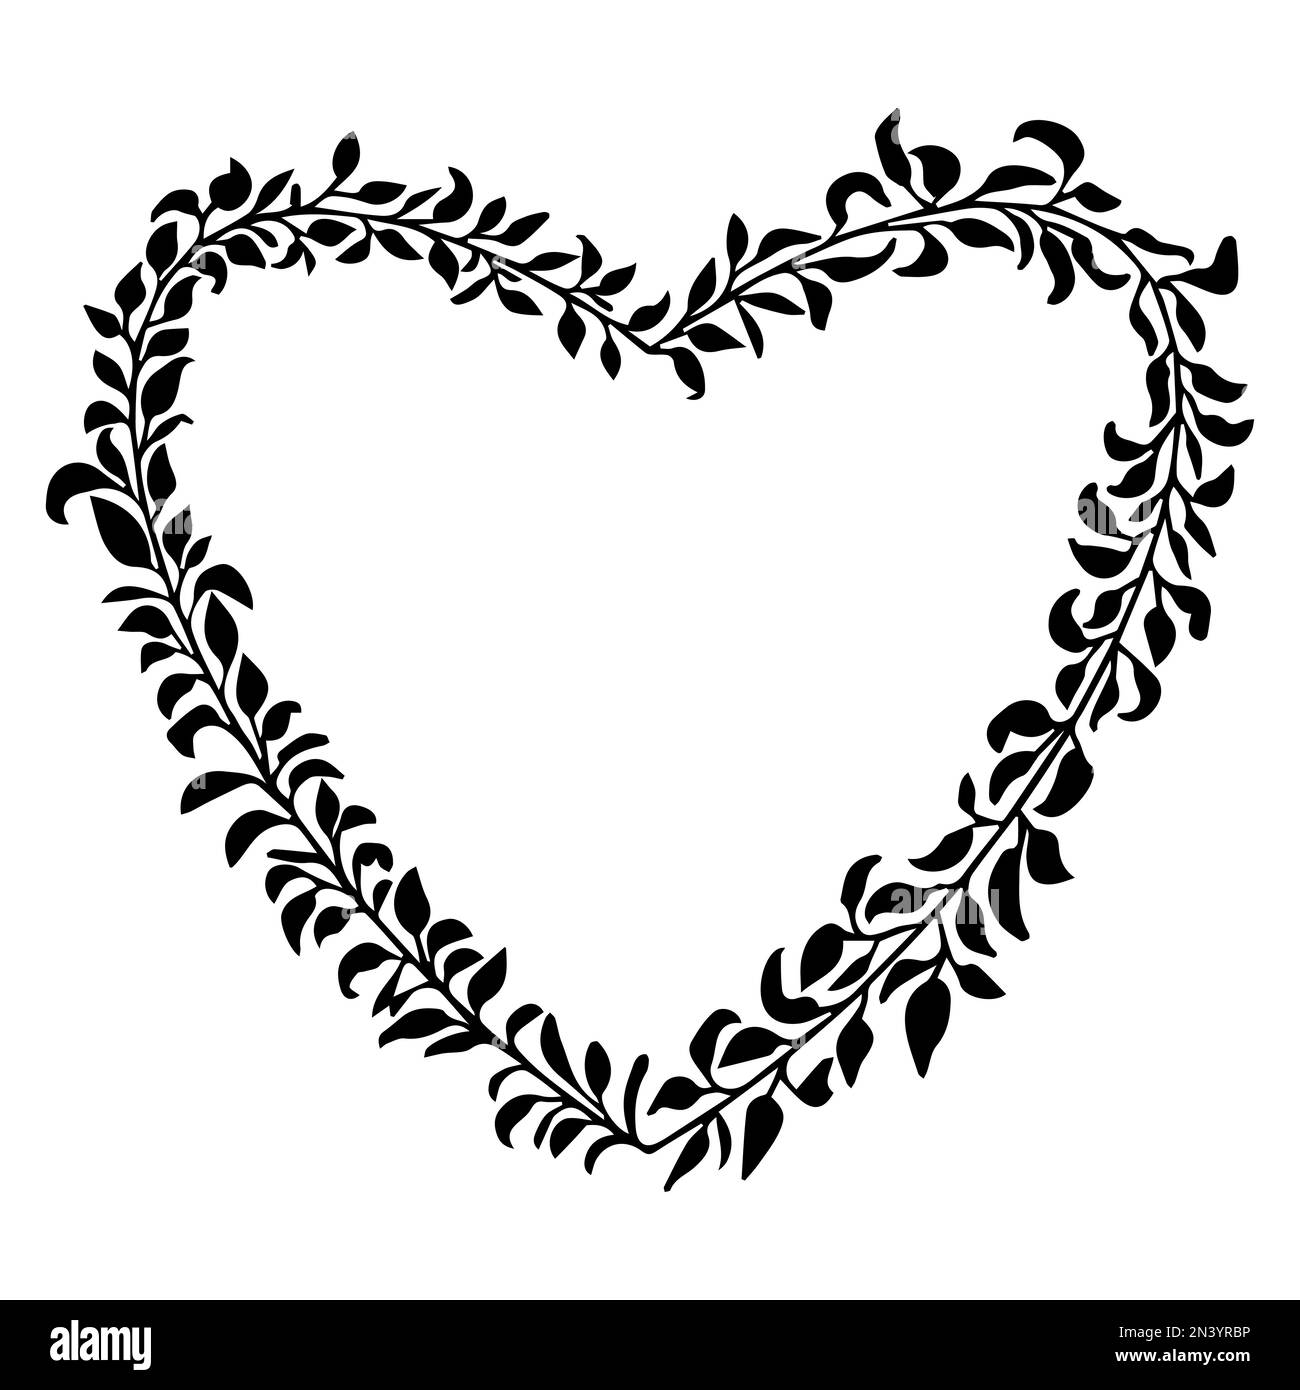 Doodle elegante cuore cornice, bordo monogramma in stile doodle isolato su sfondo bianco. Illustrazione vettoriale Illustrazione Vettoriale